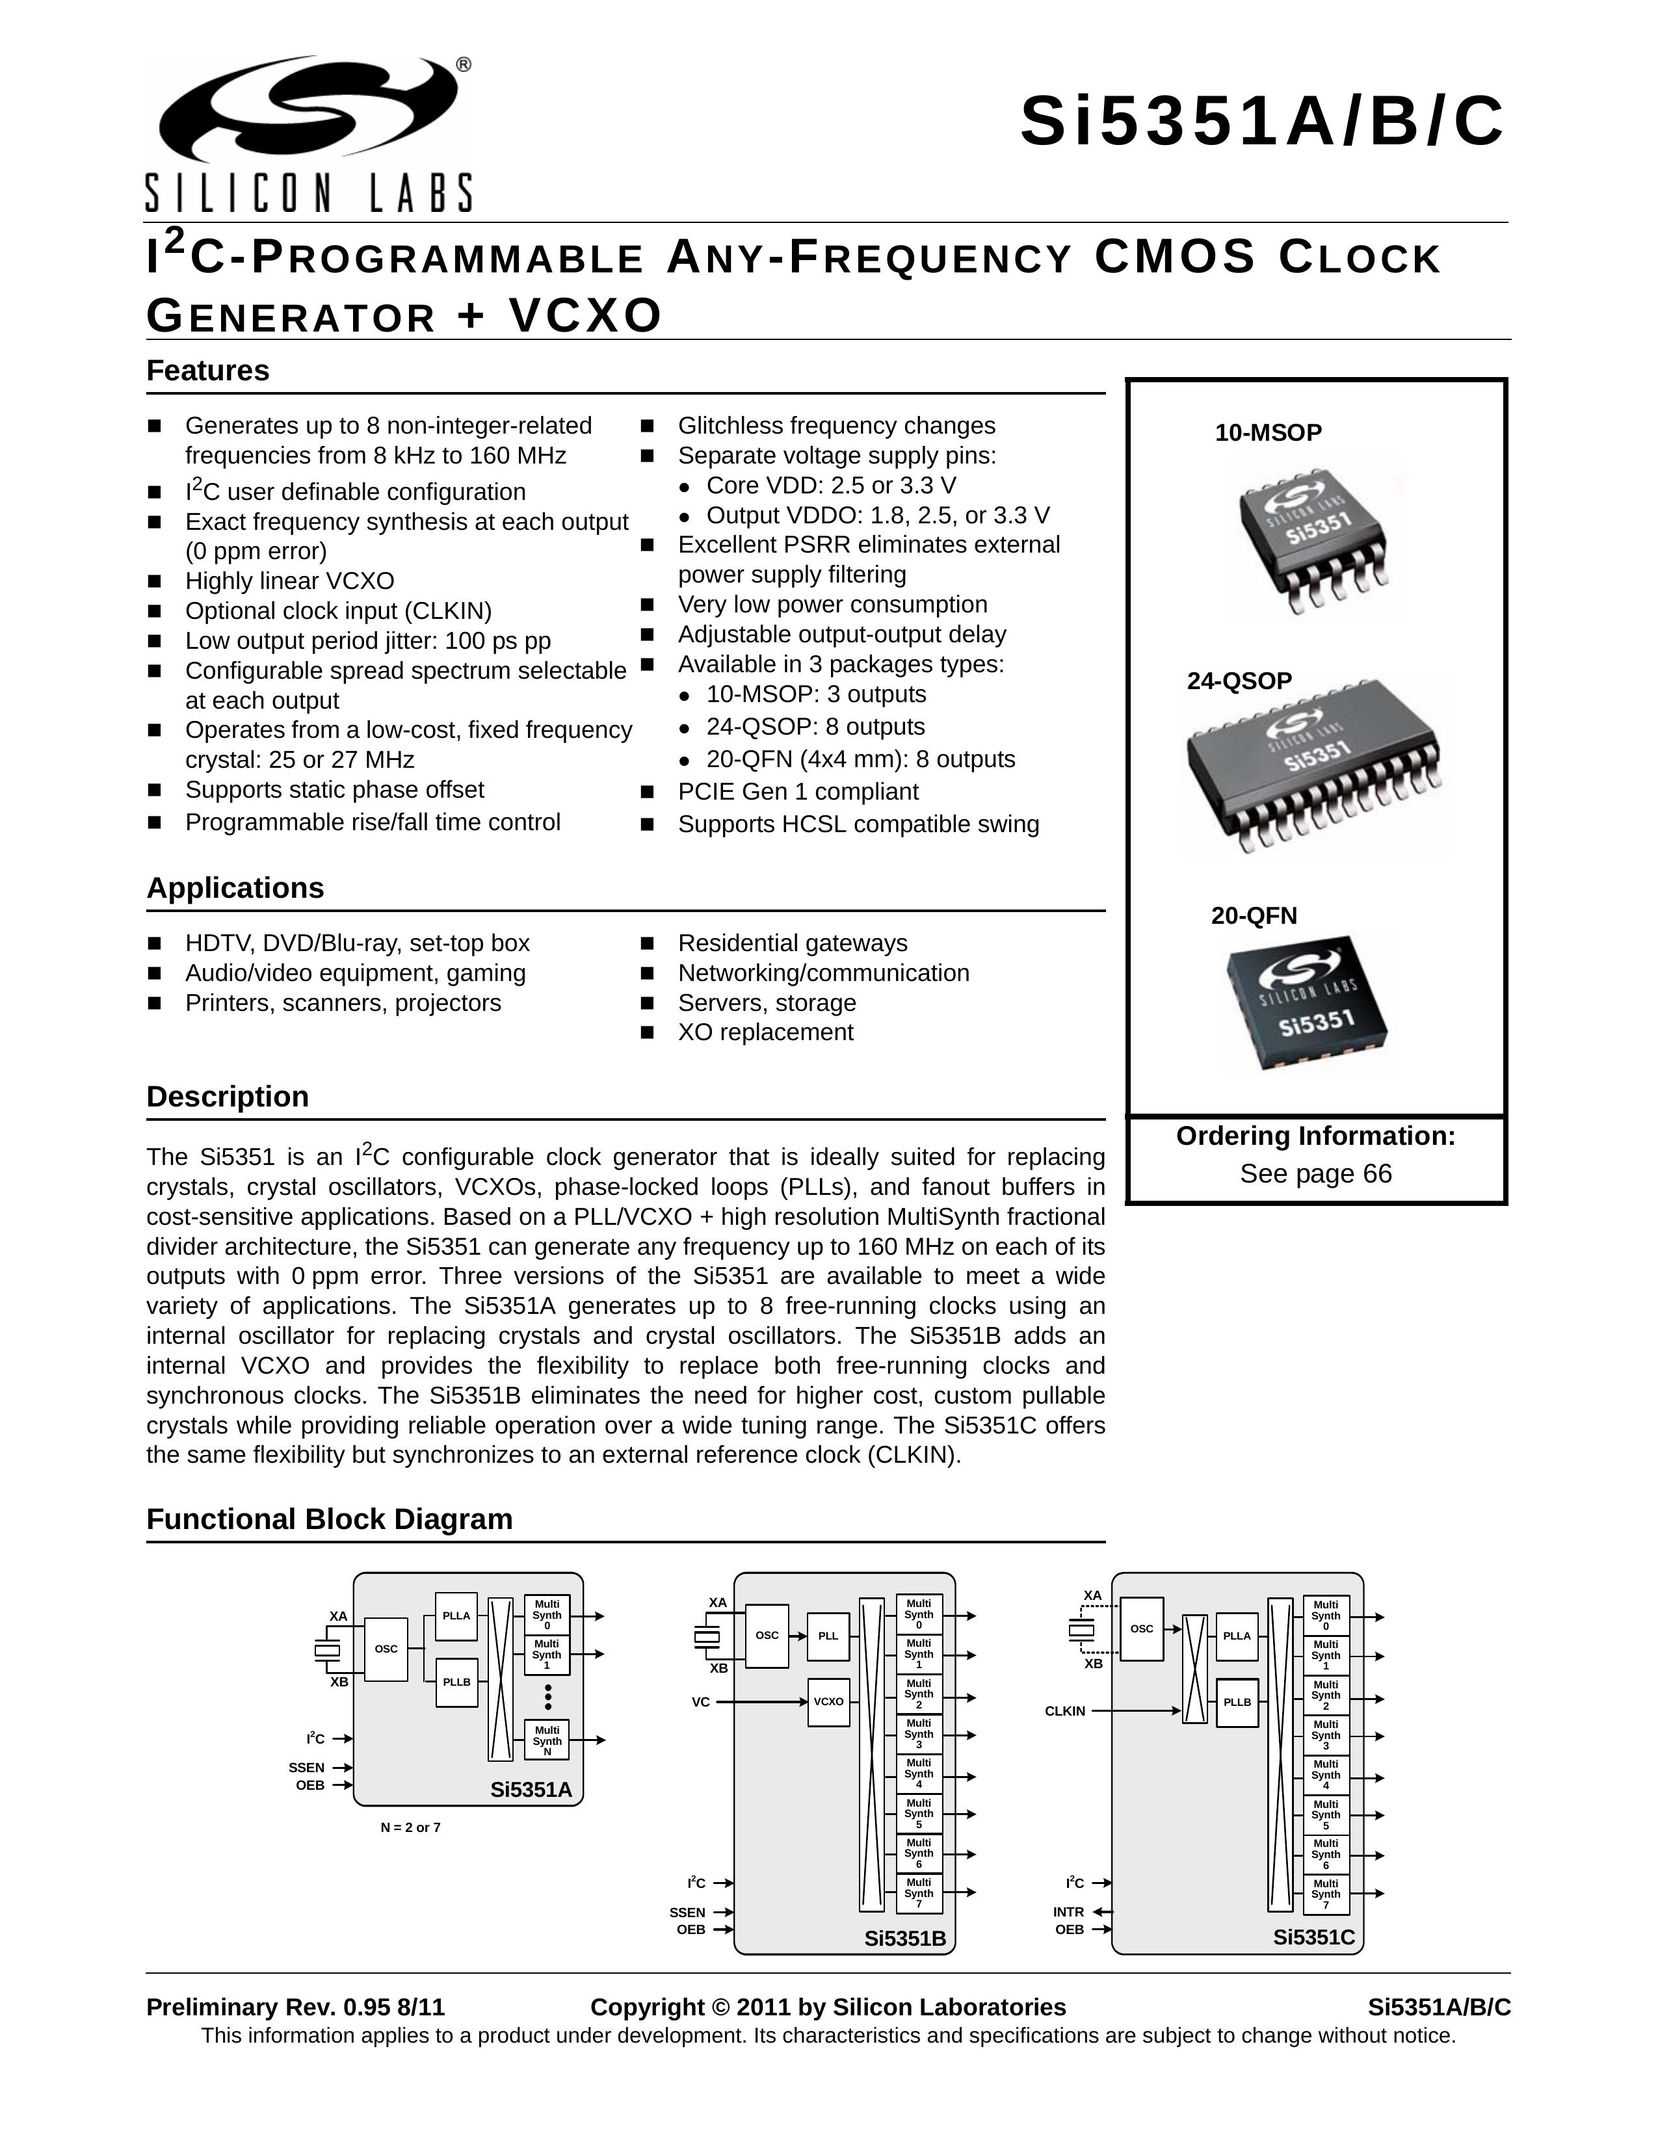 Silicon Laboratories SI5351A/B/C Computer Hardware User Manual